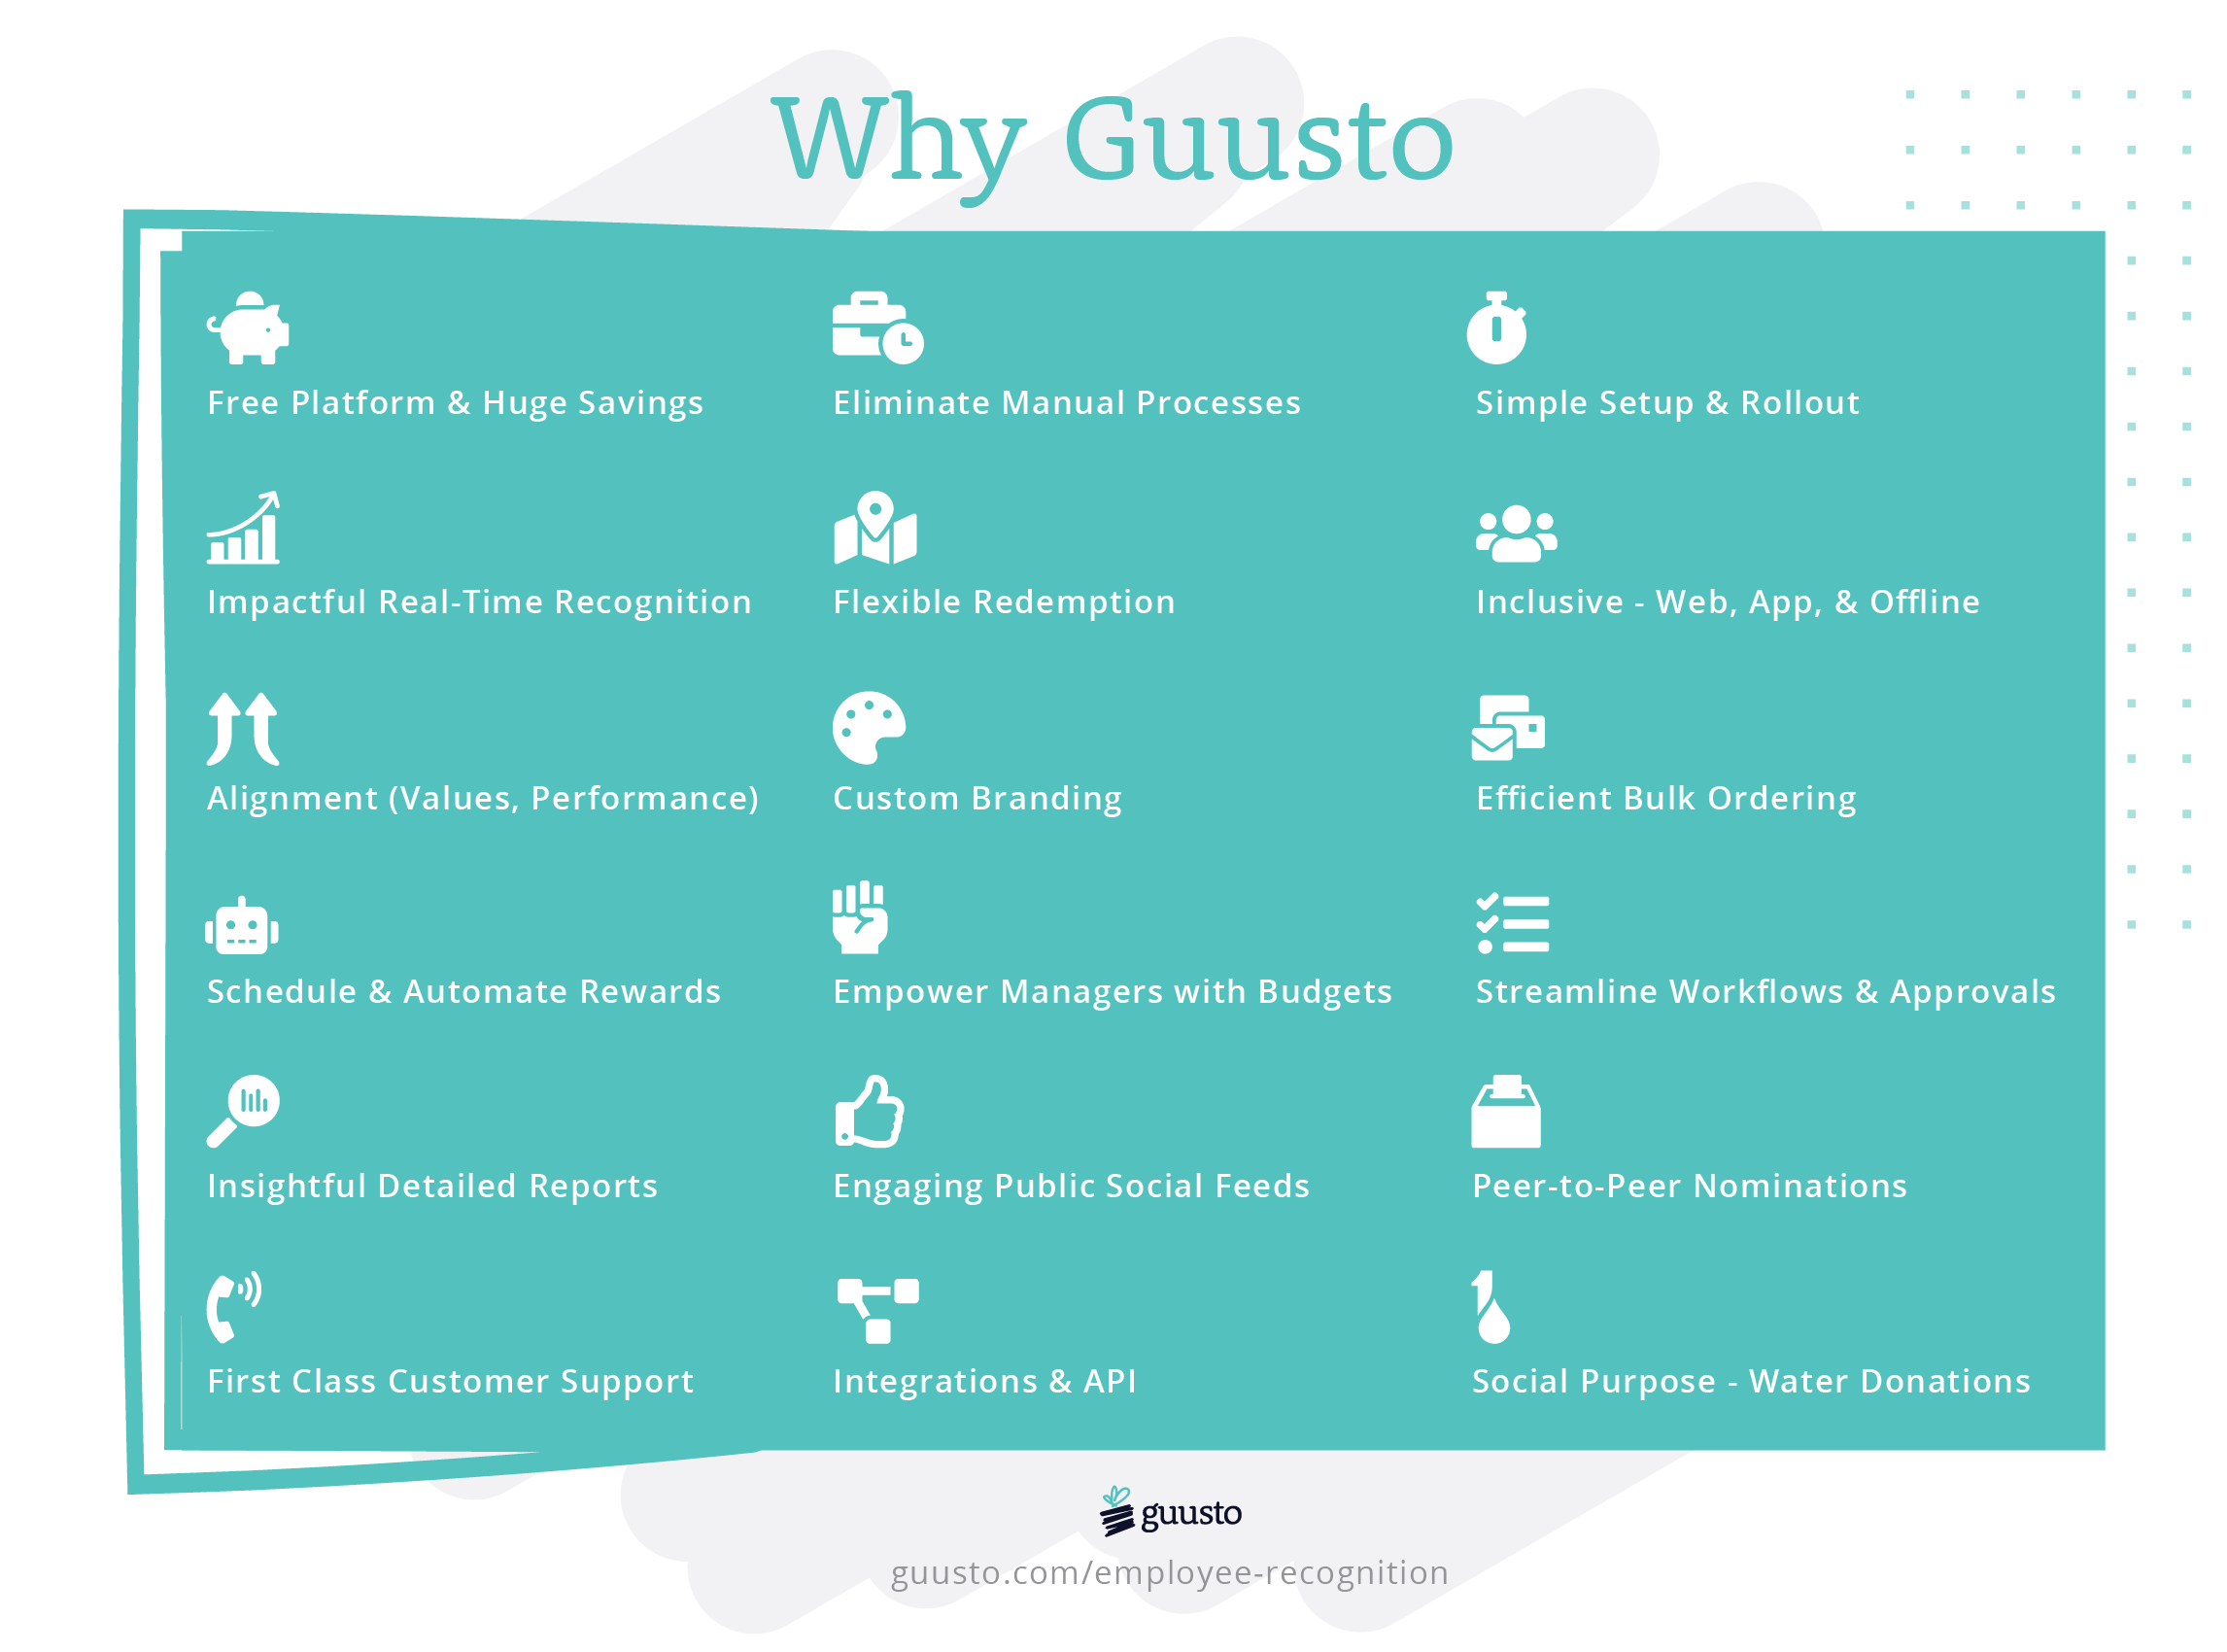 Guusto - vendor materials